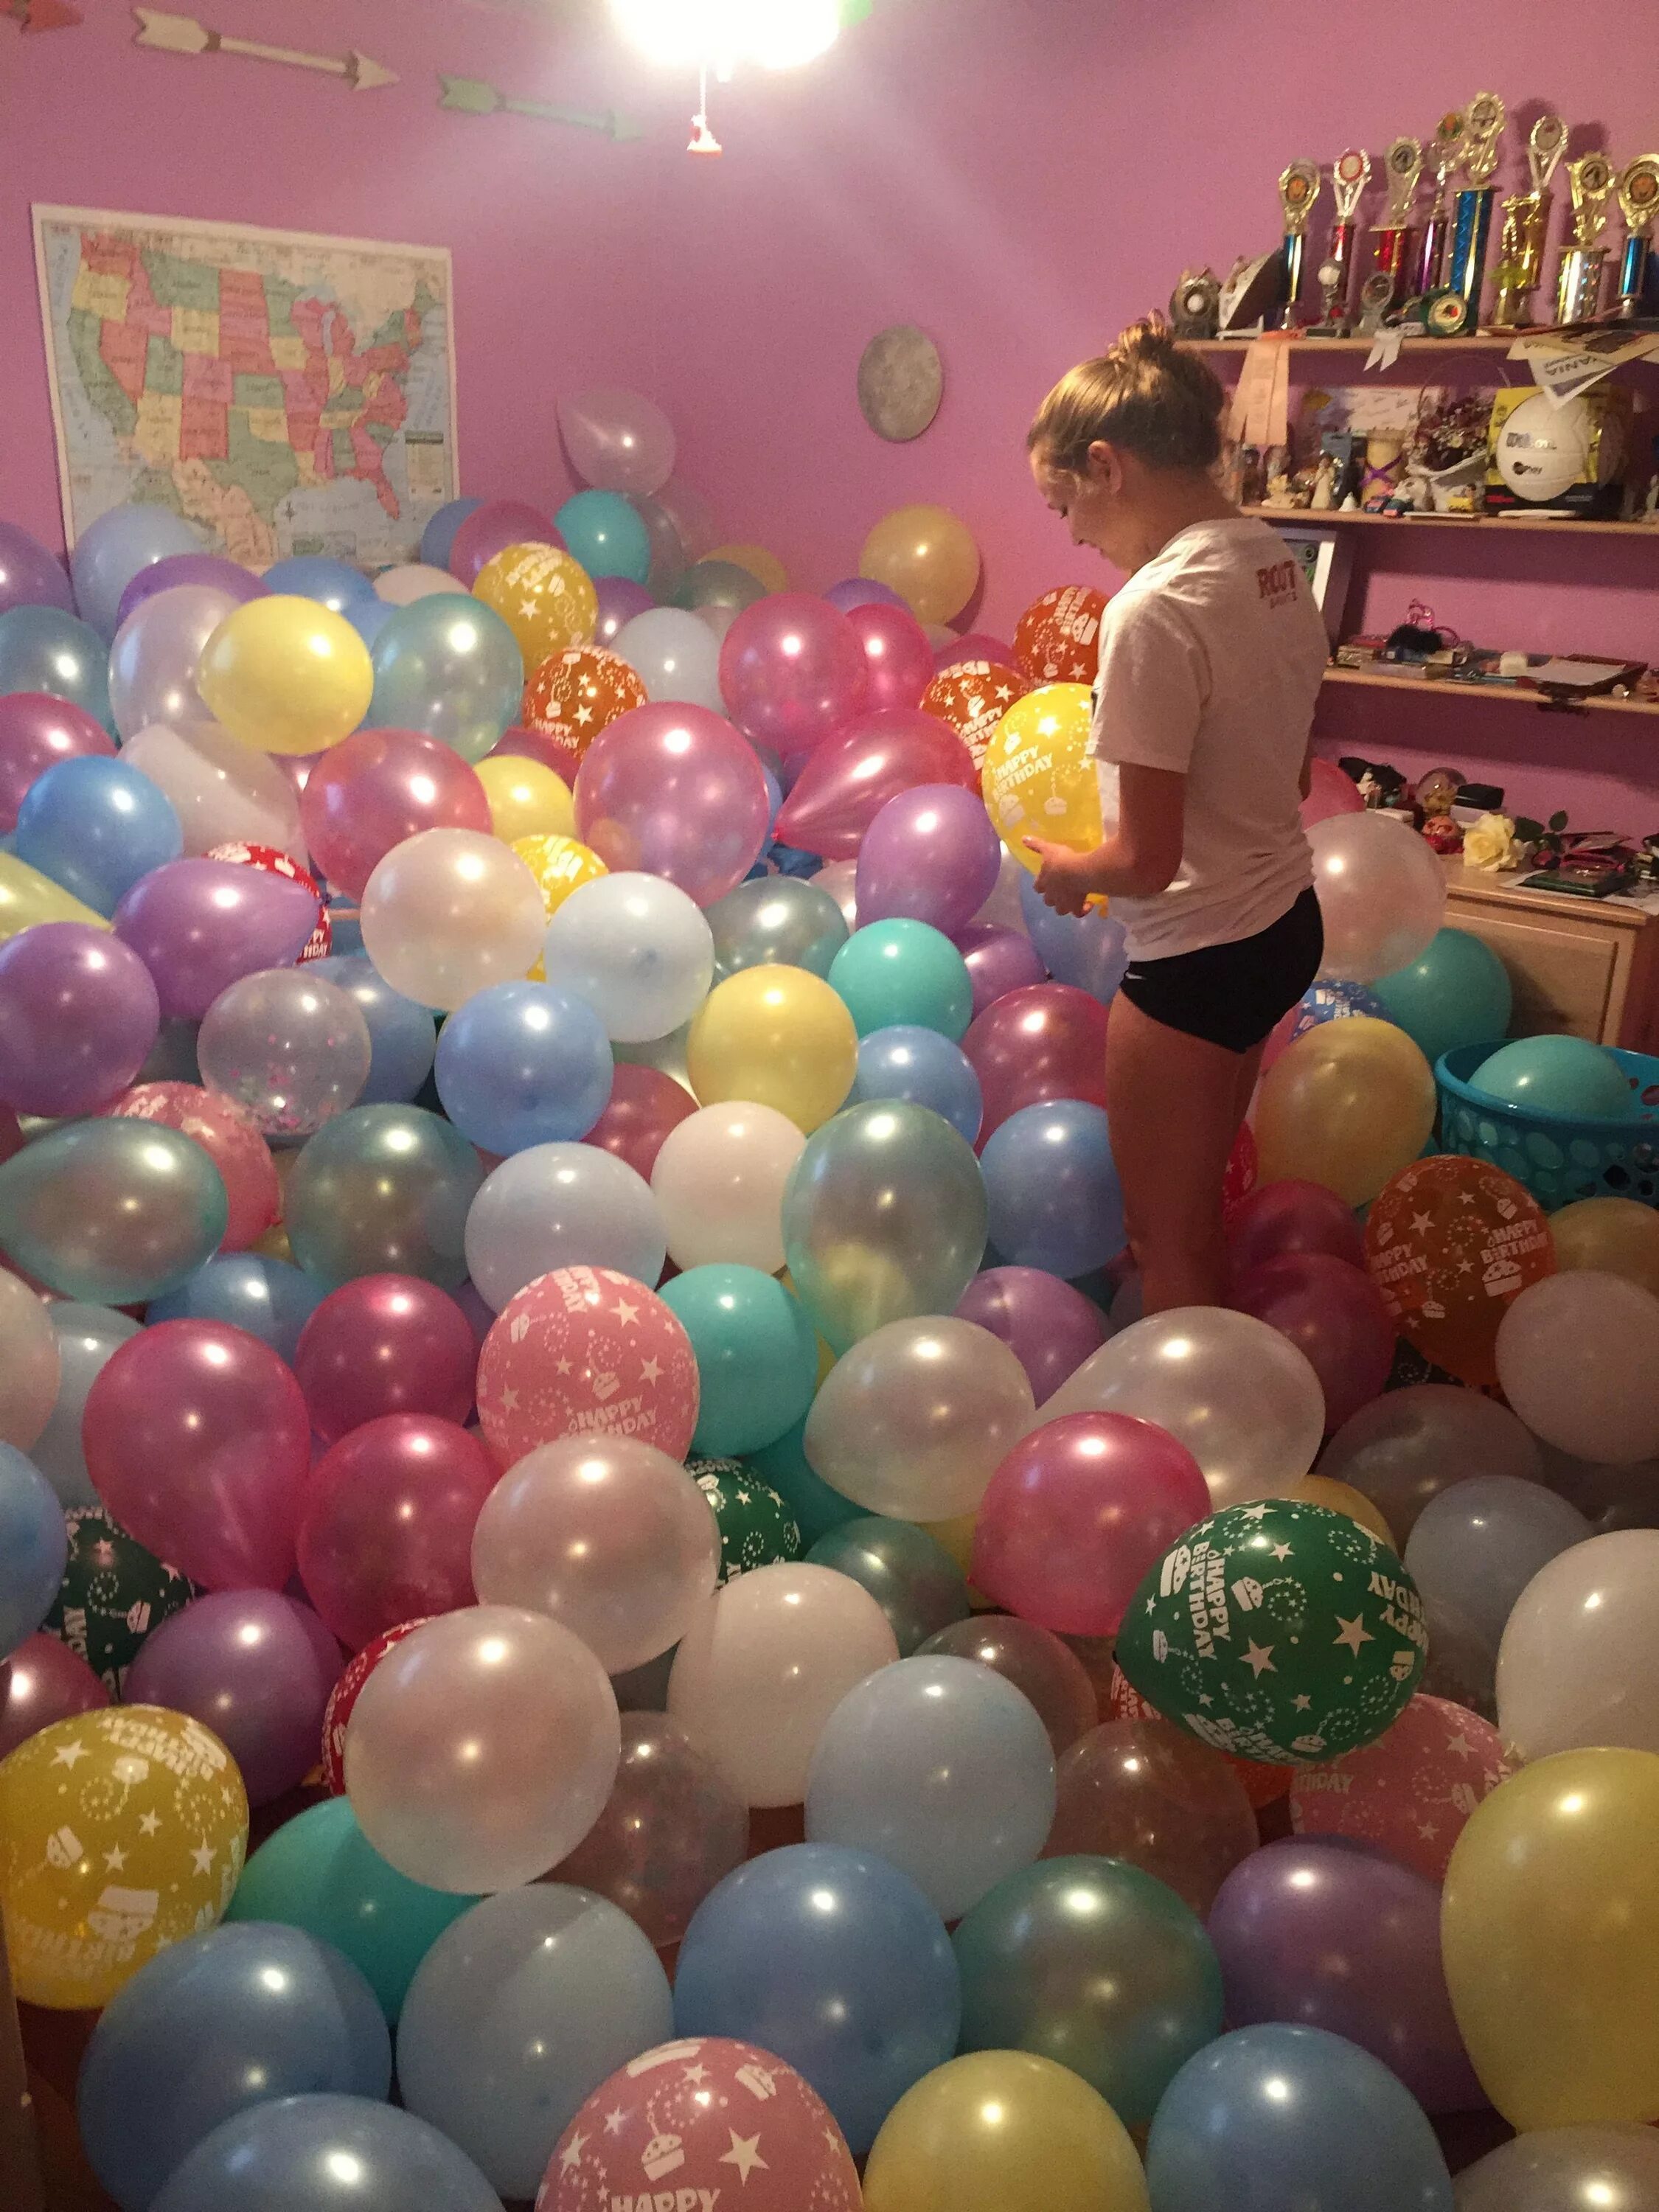 Купить дом шарами. Шары в комнате. Комната с шарами. Комната с шариками на день рождения. Воздушные шары в комнате.